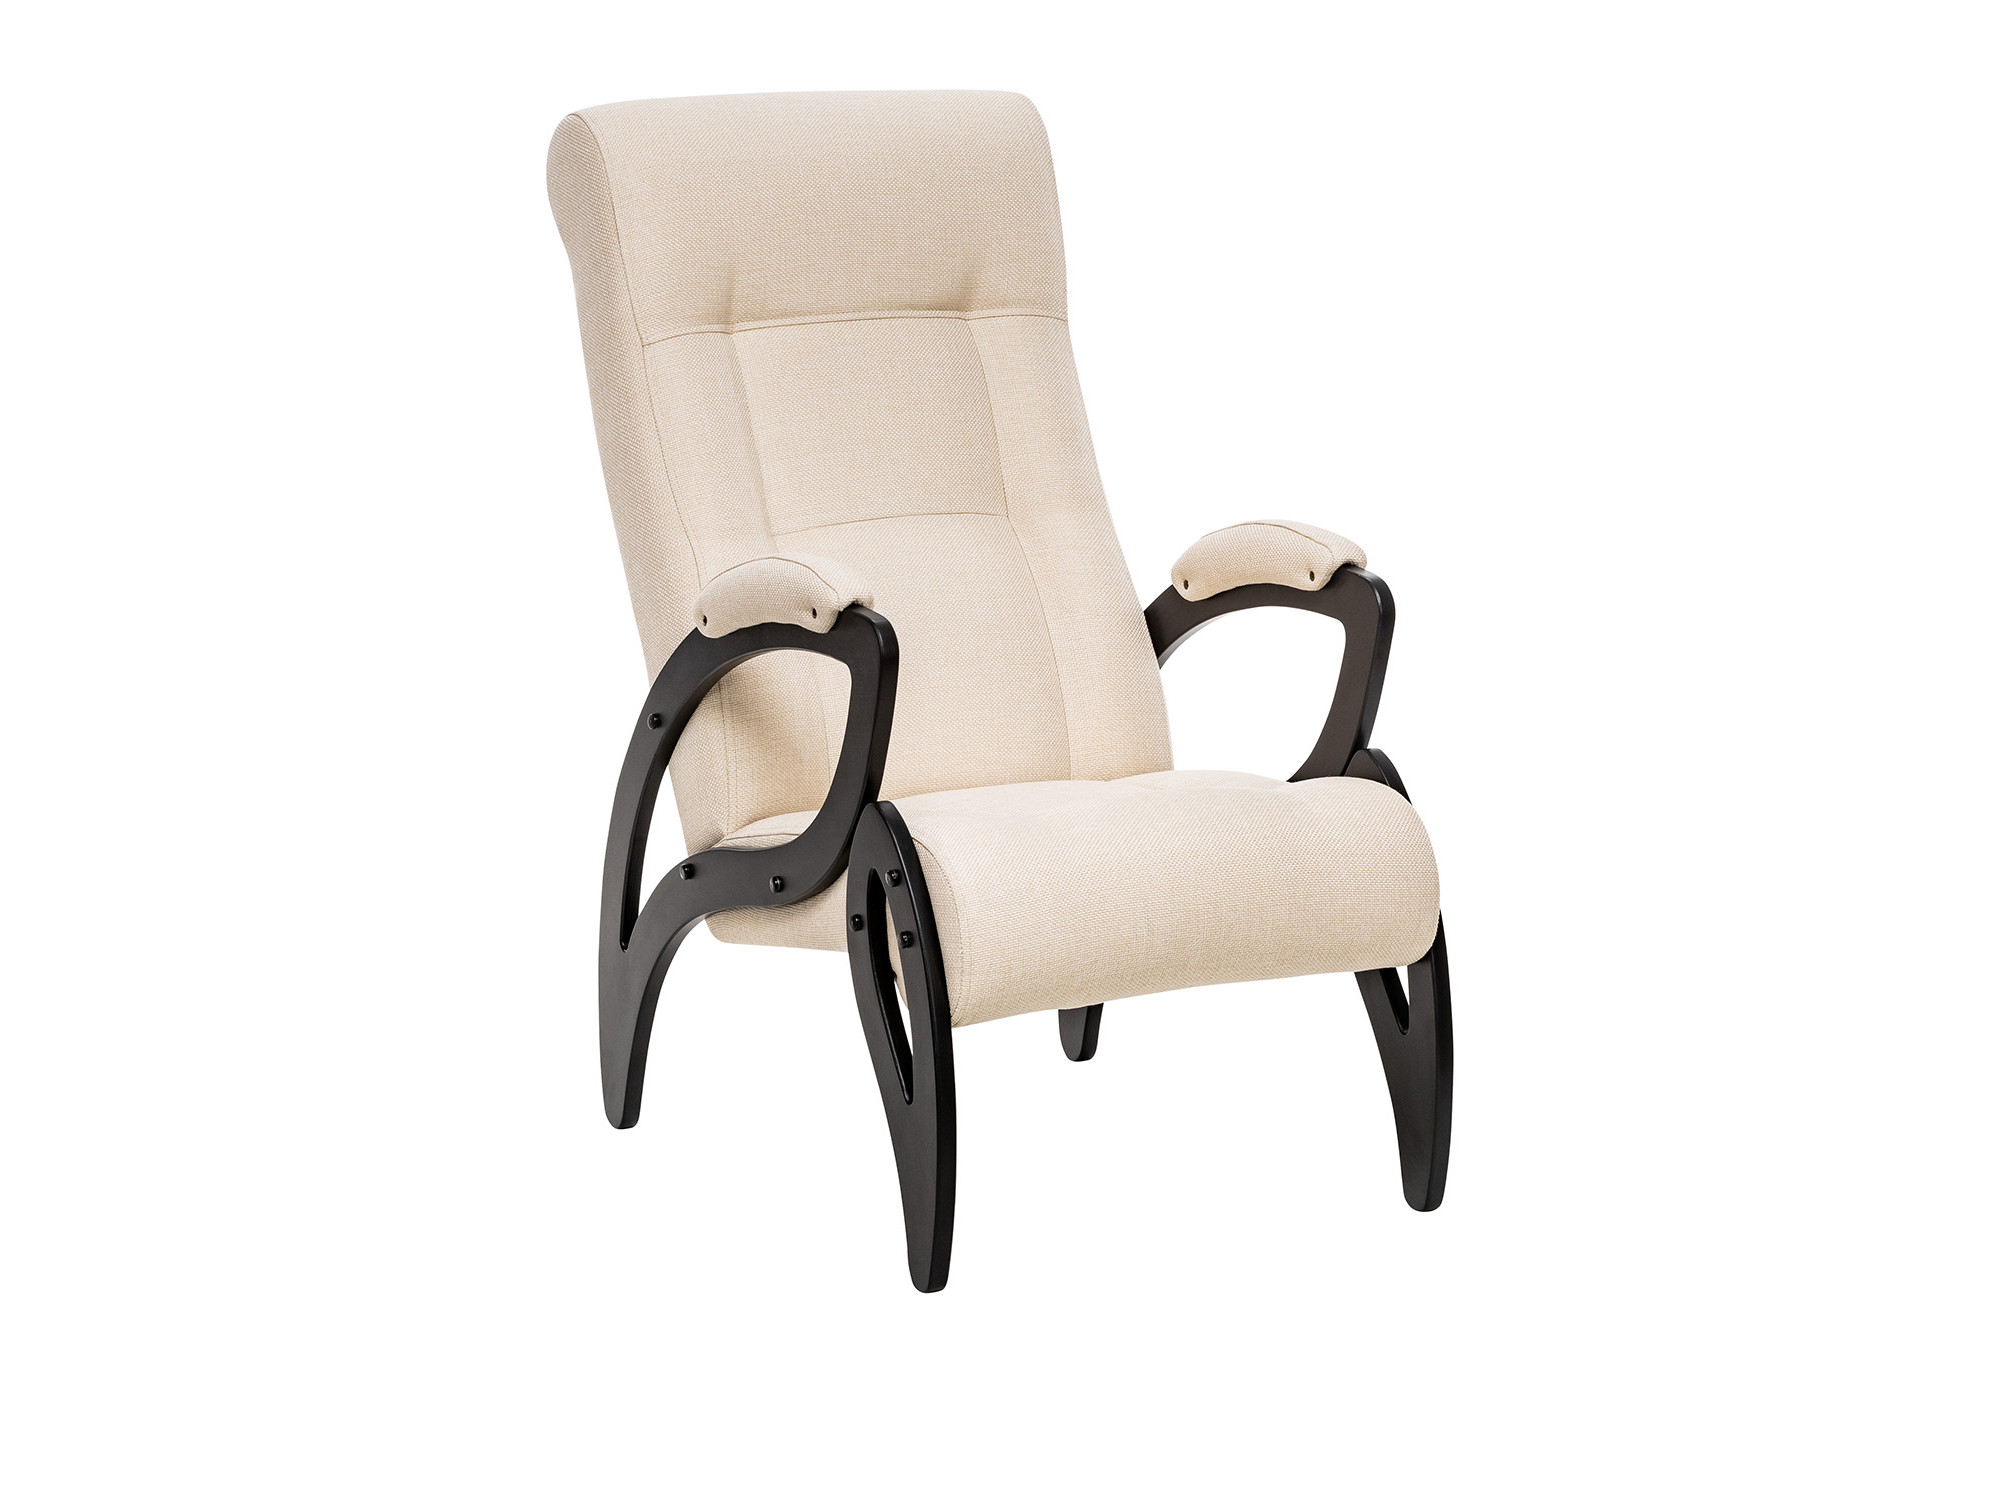 кресло для отдыха модель 41 mebelvia antik crocodile экокожа шпон лак фанера Кресло для отдыха Модель 51 MebelVia Malta 01, Ткань Рогожка, Шпон, Лак, Фанера